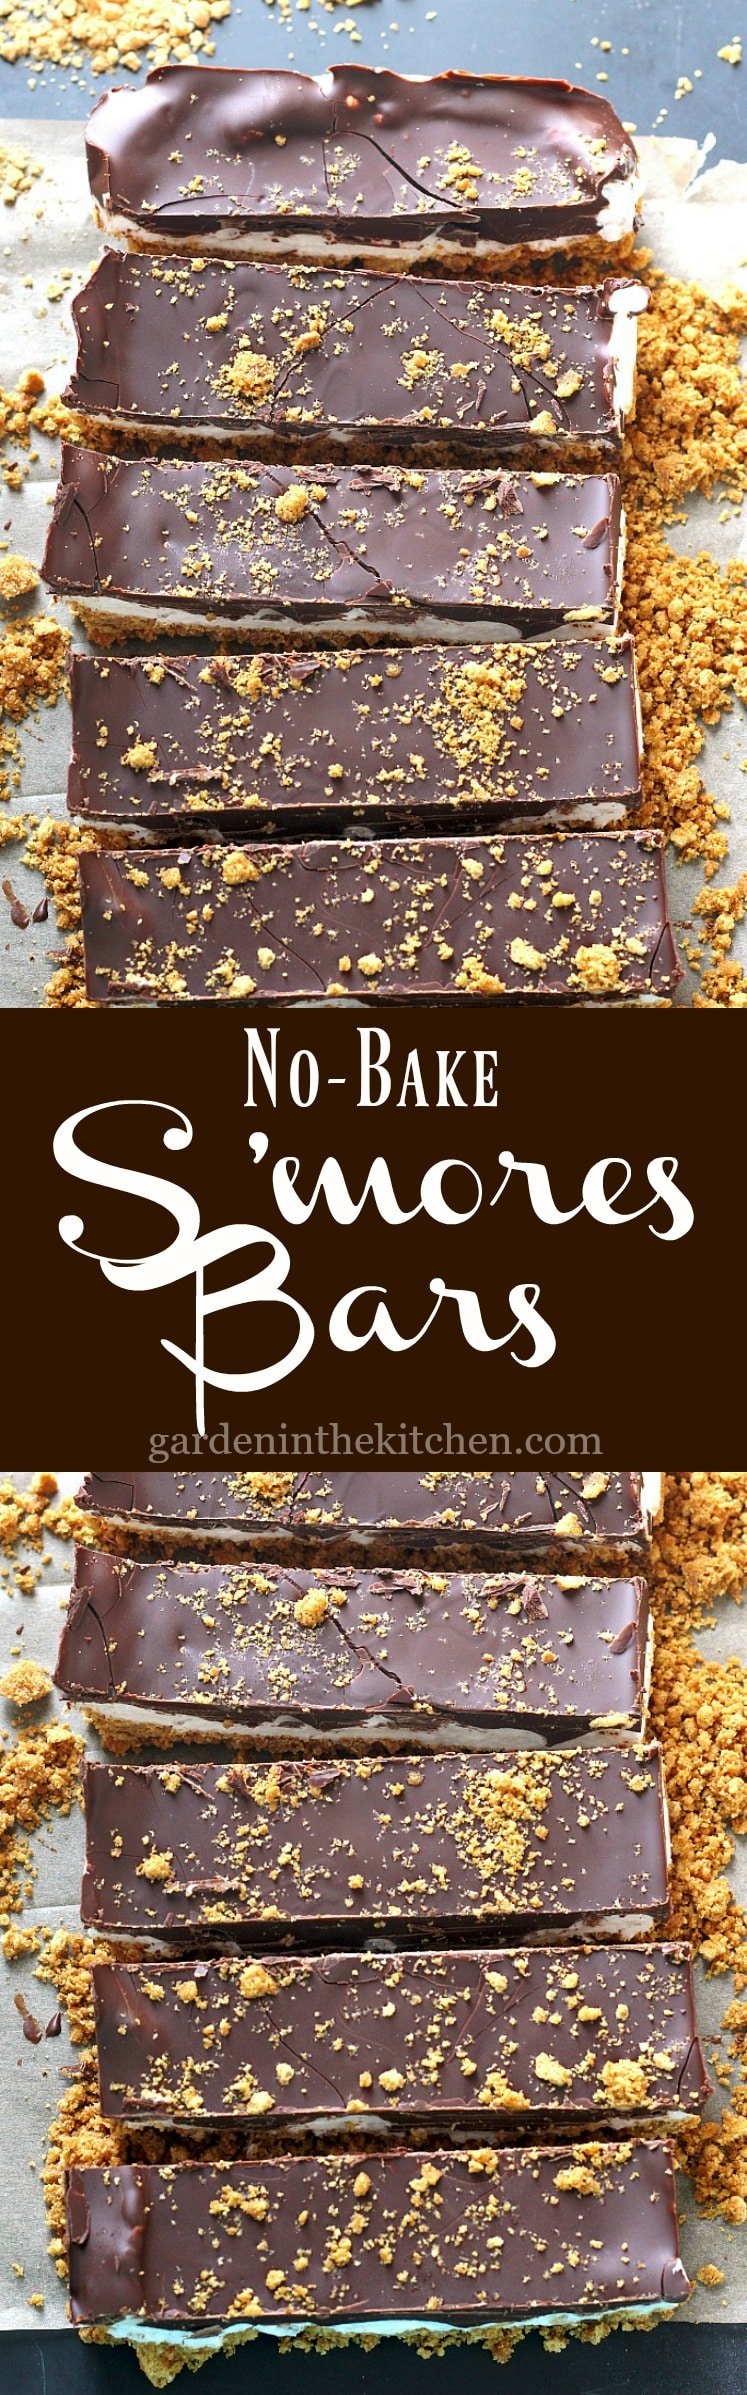 No-Bake S’mores Bars